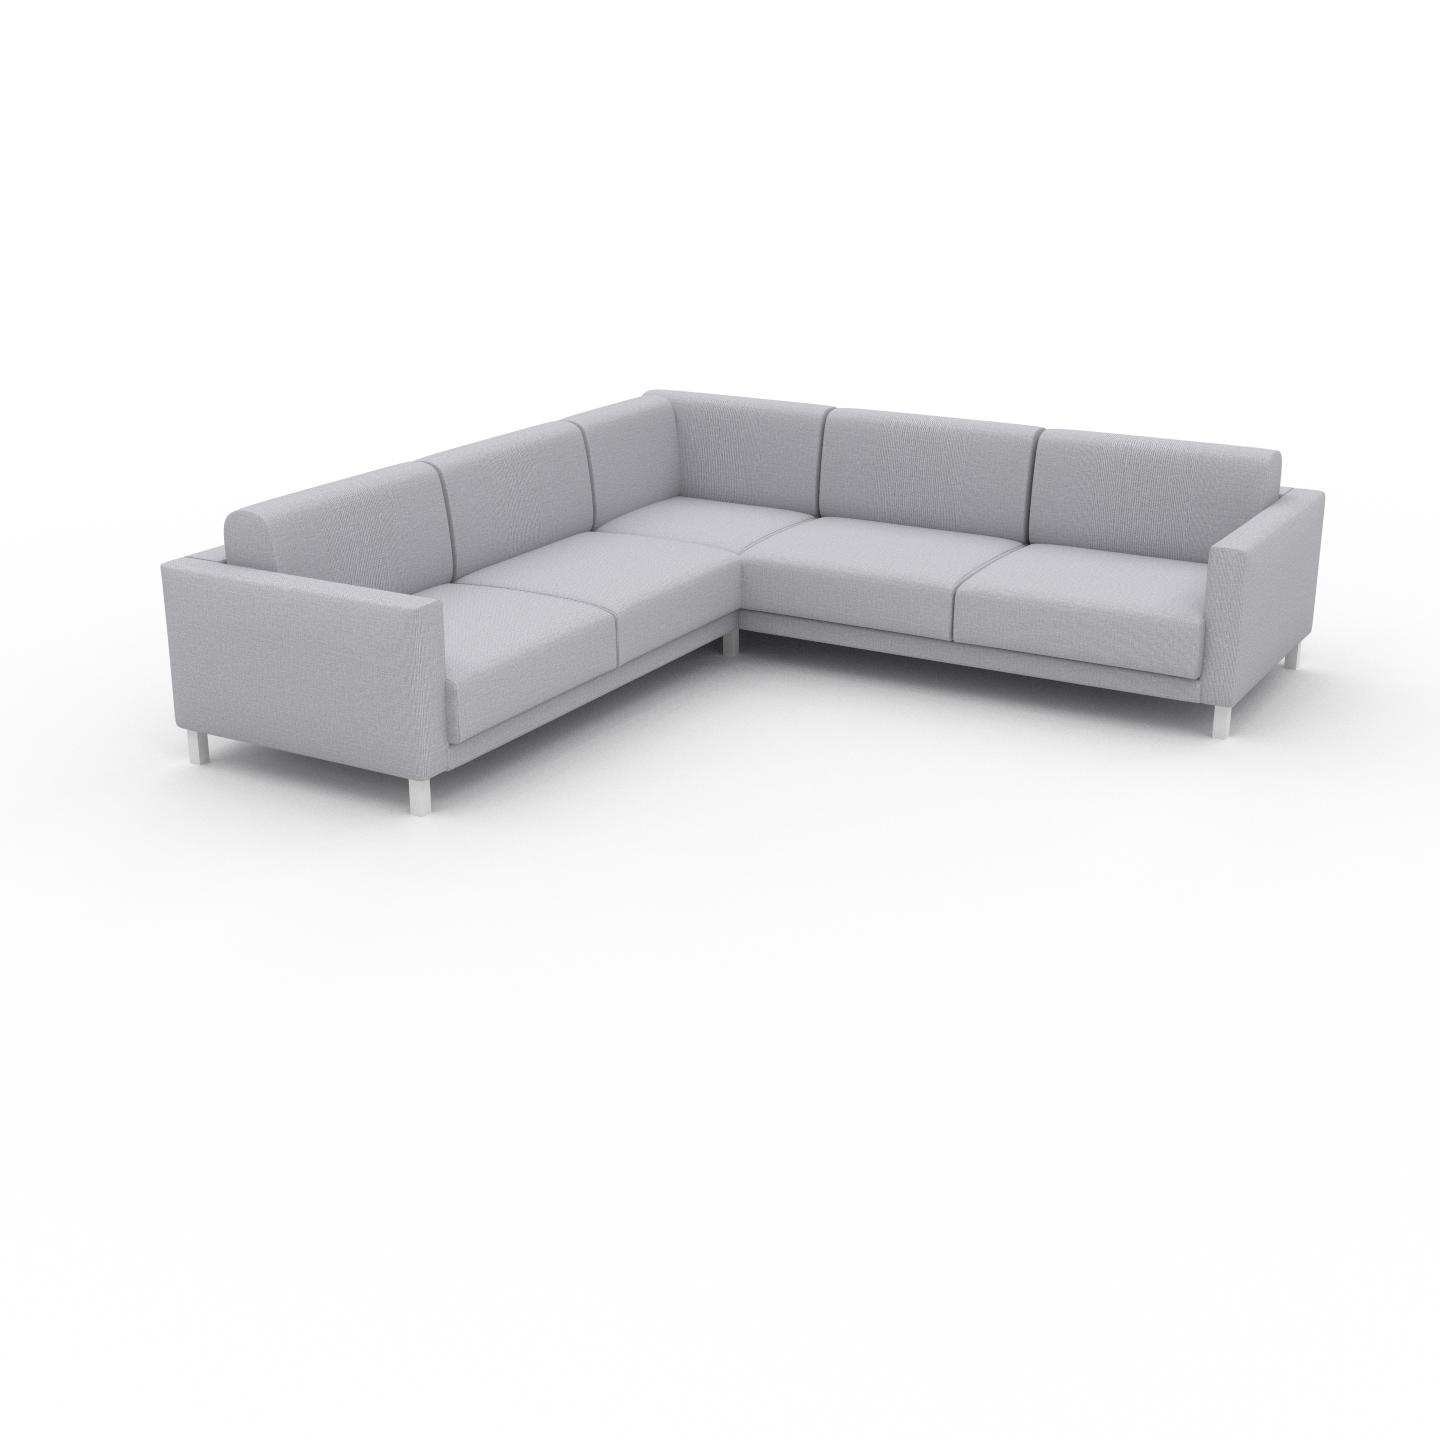 MYCS Sofa Lichtgrau - Moderne Designer-Couch: Hochwertige Qualität, einzigartiges Design - 266 x 75 x 266 cm, Komplett anpassbar